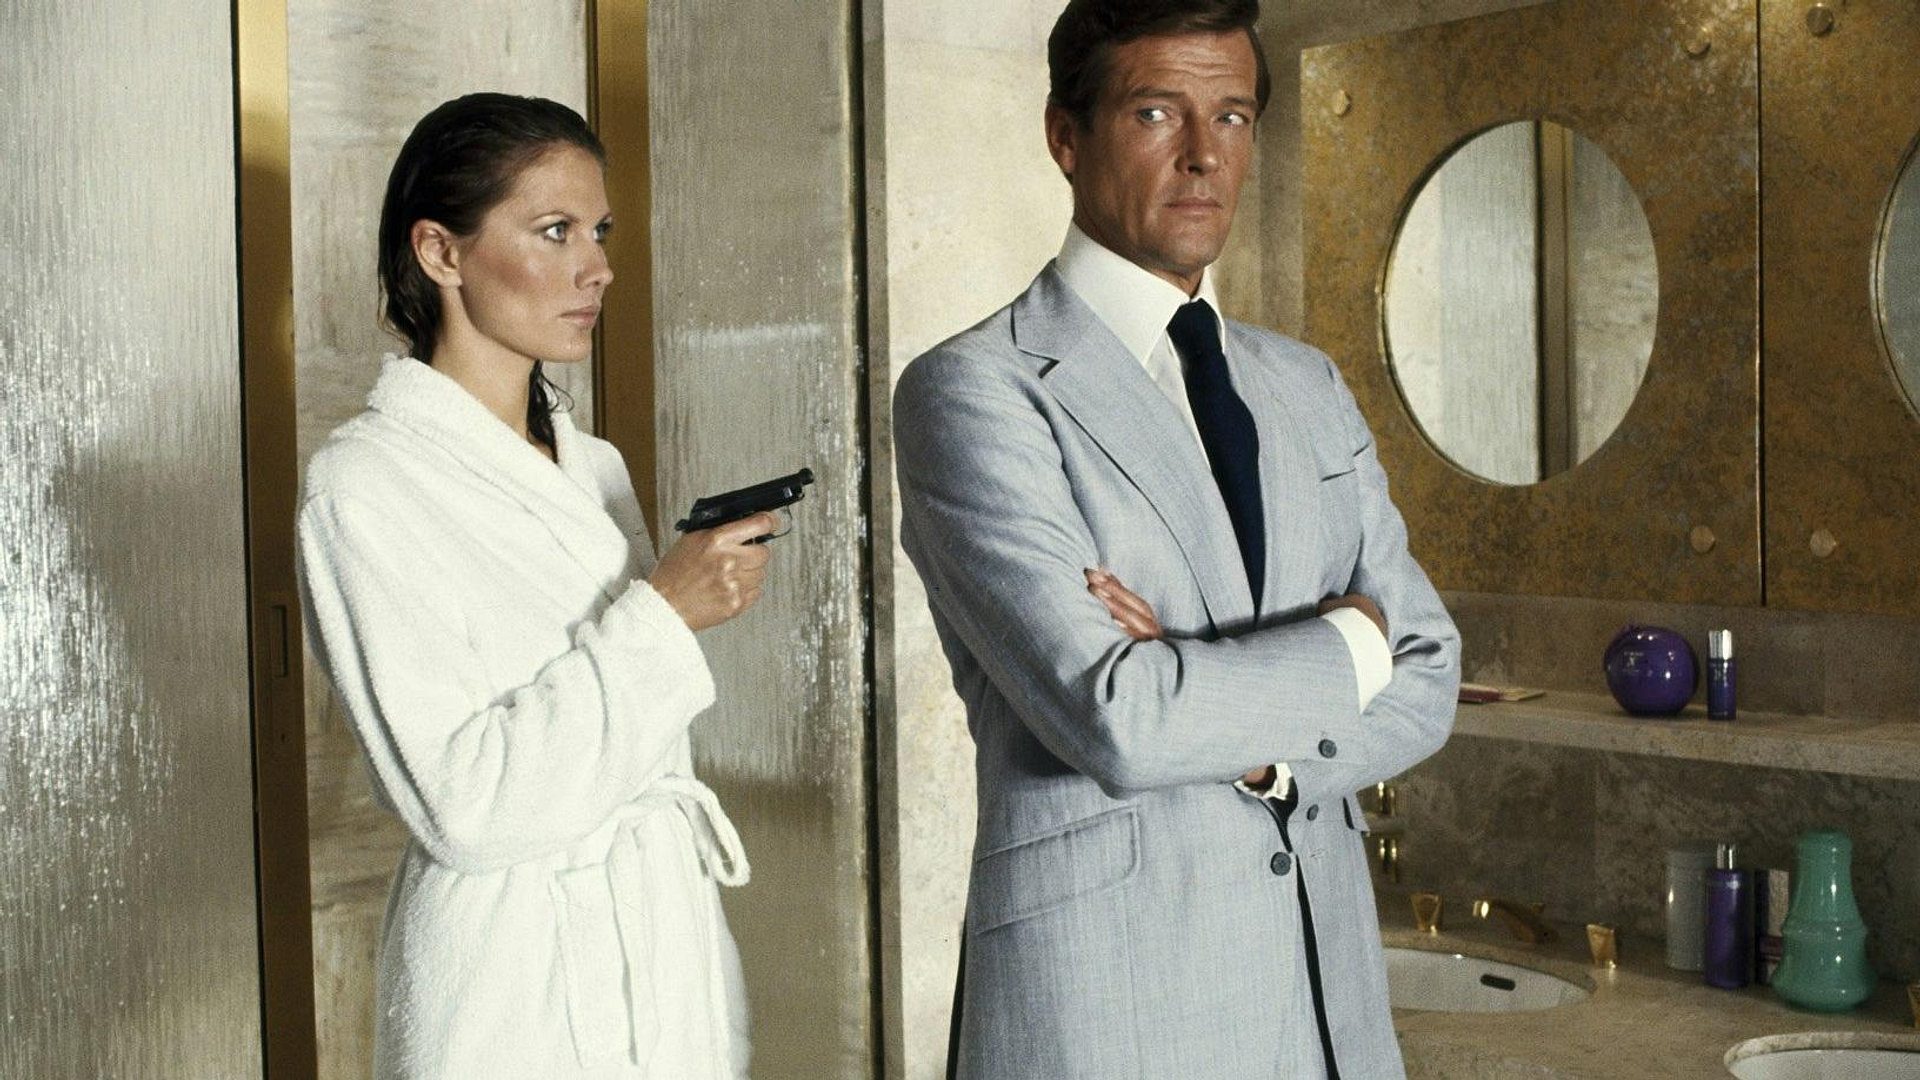 Bond - Mannen med den gylne pistol